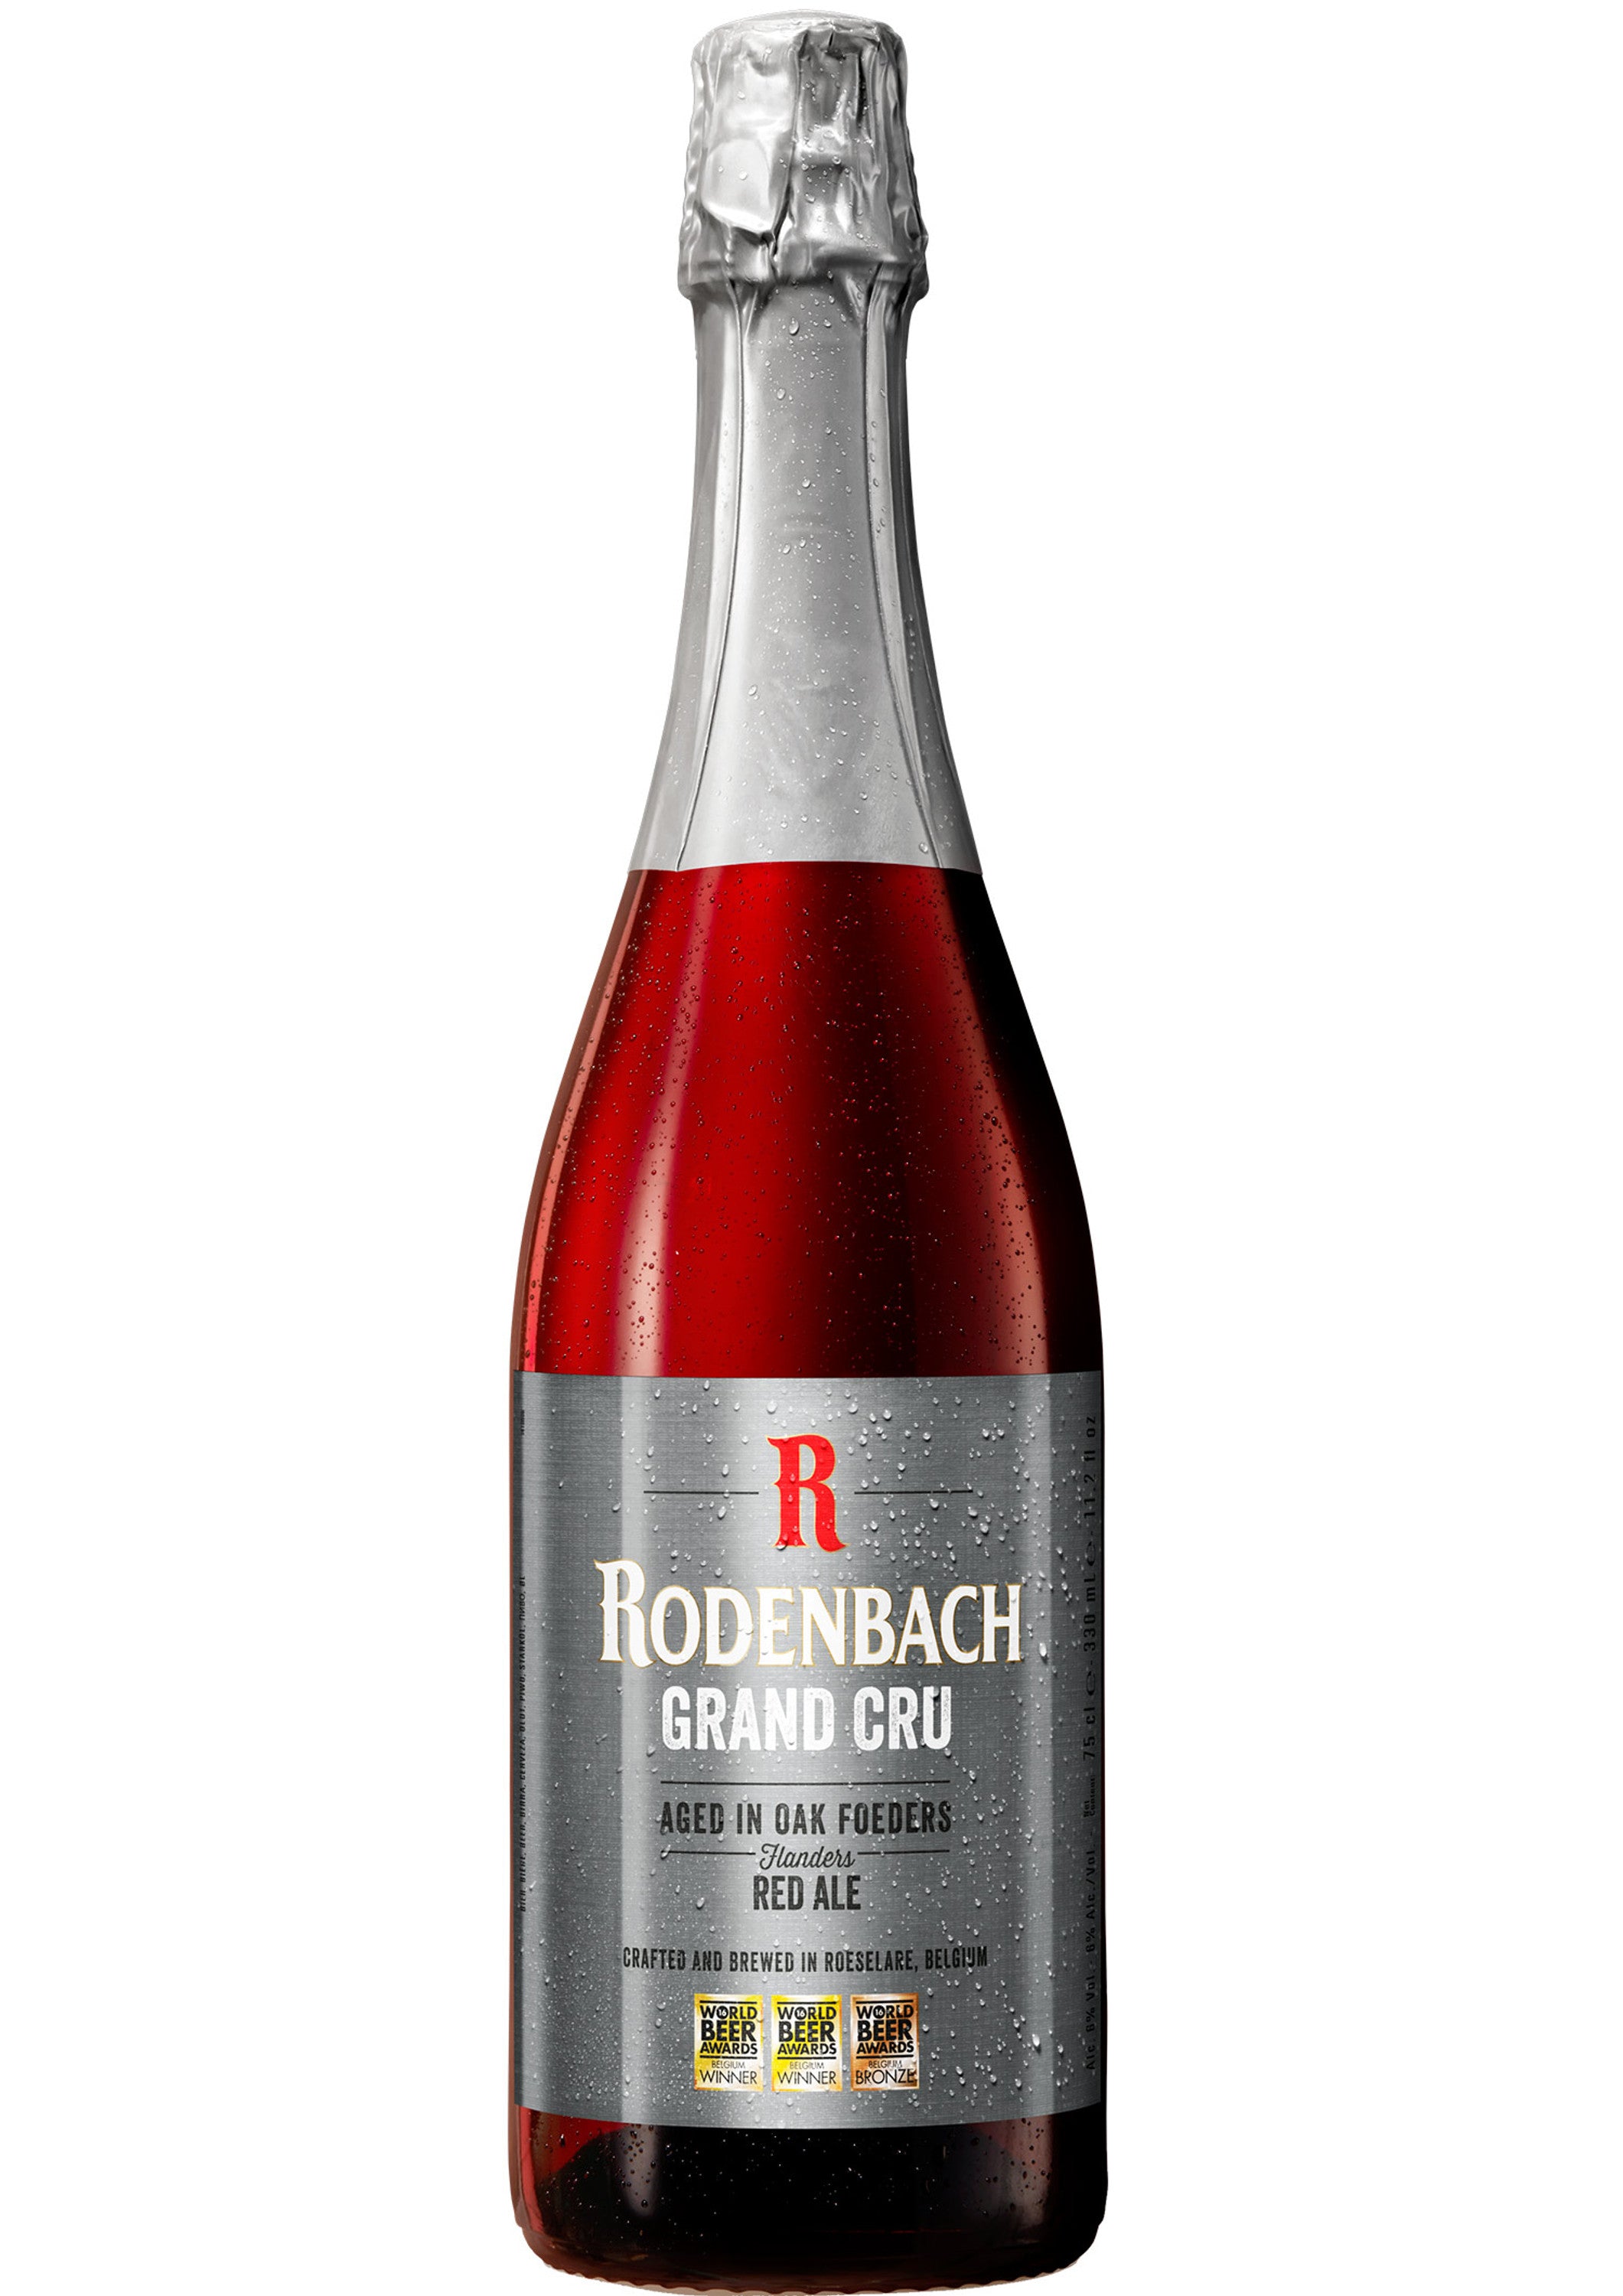 Rodenbach Grand Cru Bier - Das belgische Spezialbier - Flämisches Ale mit 6,0% Vol.